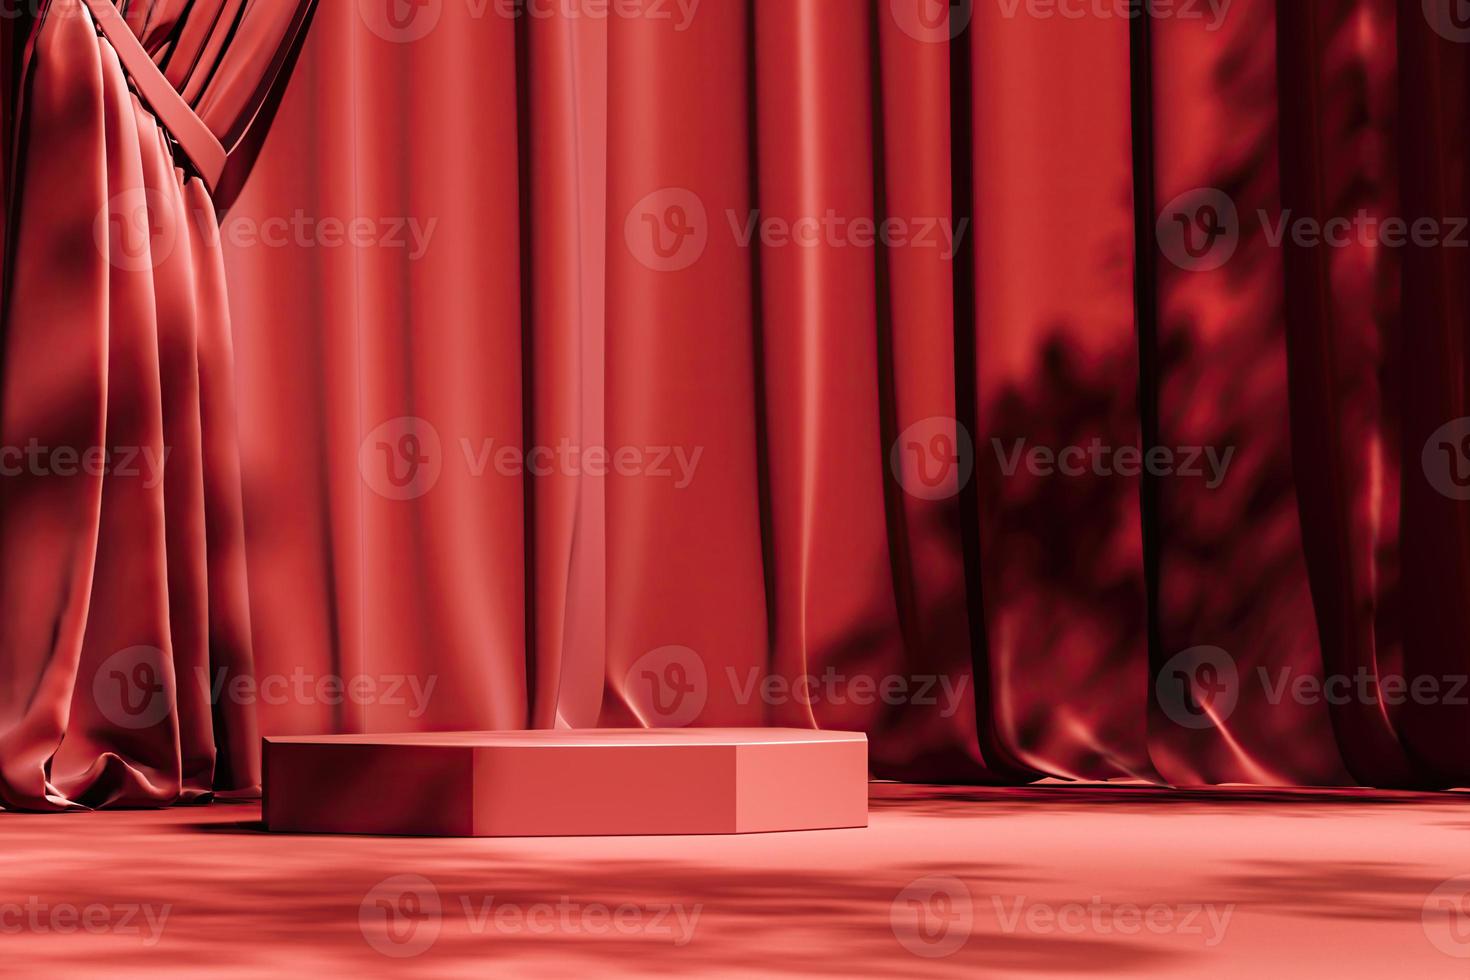 plataforma roja en la escena de la cortina roja, sombrilla y sombra de árboles en el fondo. fondo abstracto para la presentación de productos o anuncios. representación 3d foto